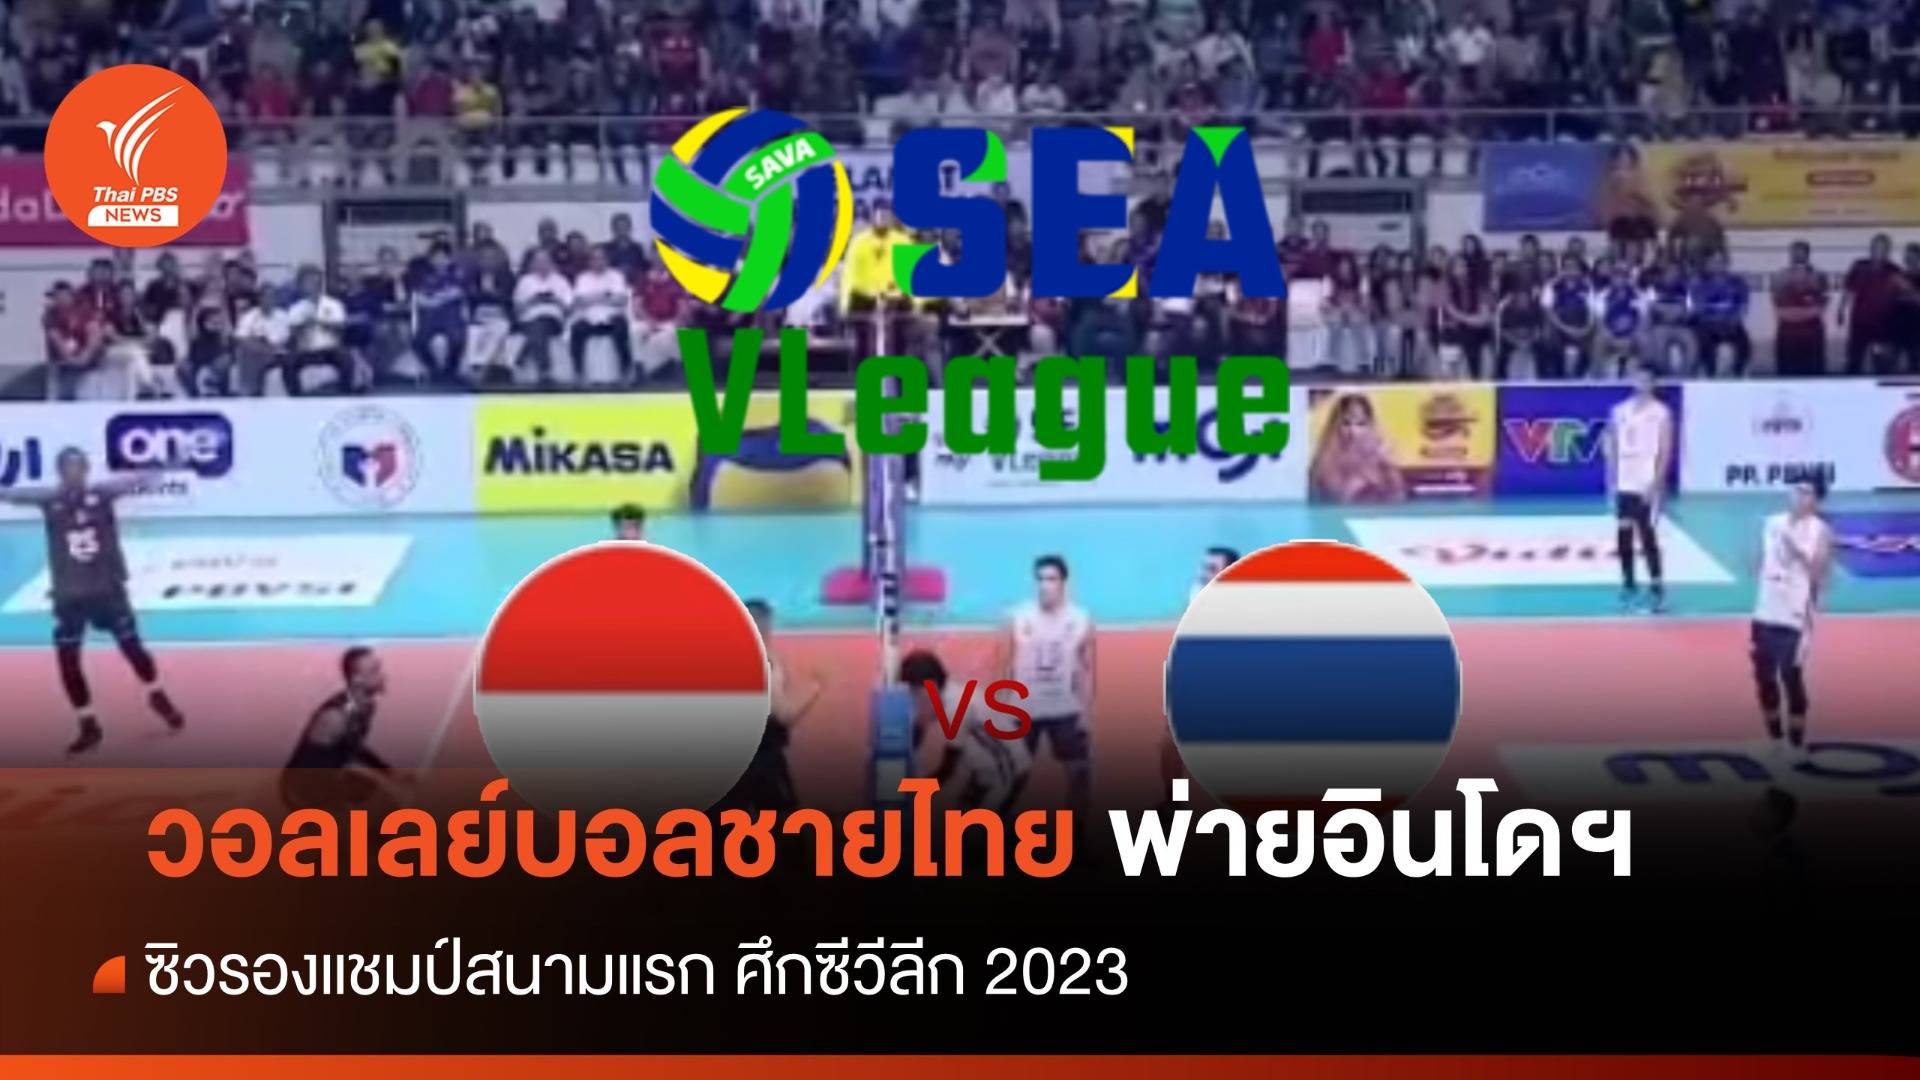 วอลเลย์บอลชายไทย พ่ายอินโดฯ ซิวรองแชมป์สนามแรก ศึกซีวีลีก 2023